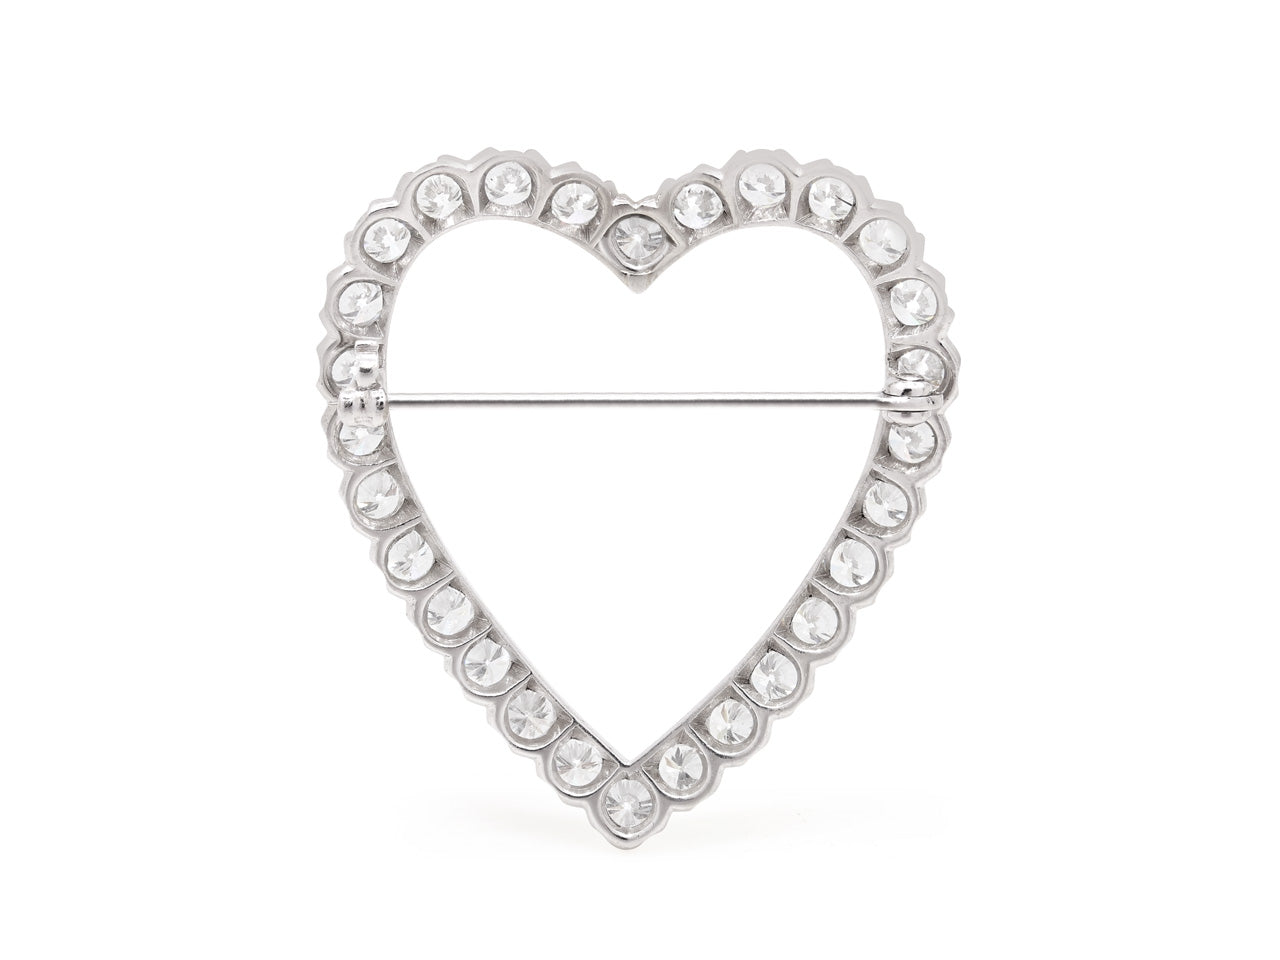 Diamond Heart Brooch in Platinum